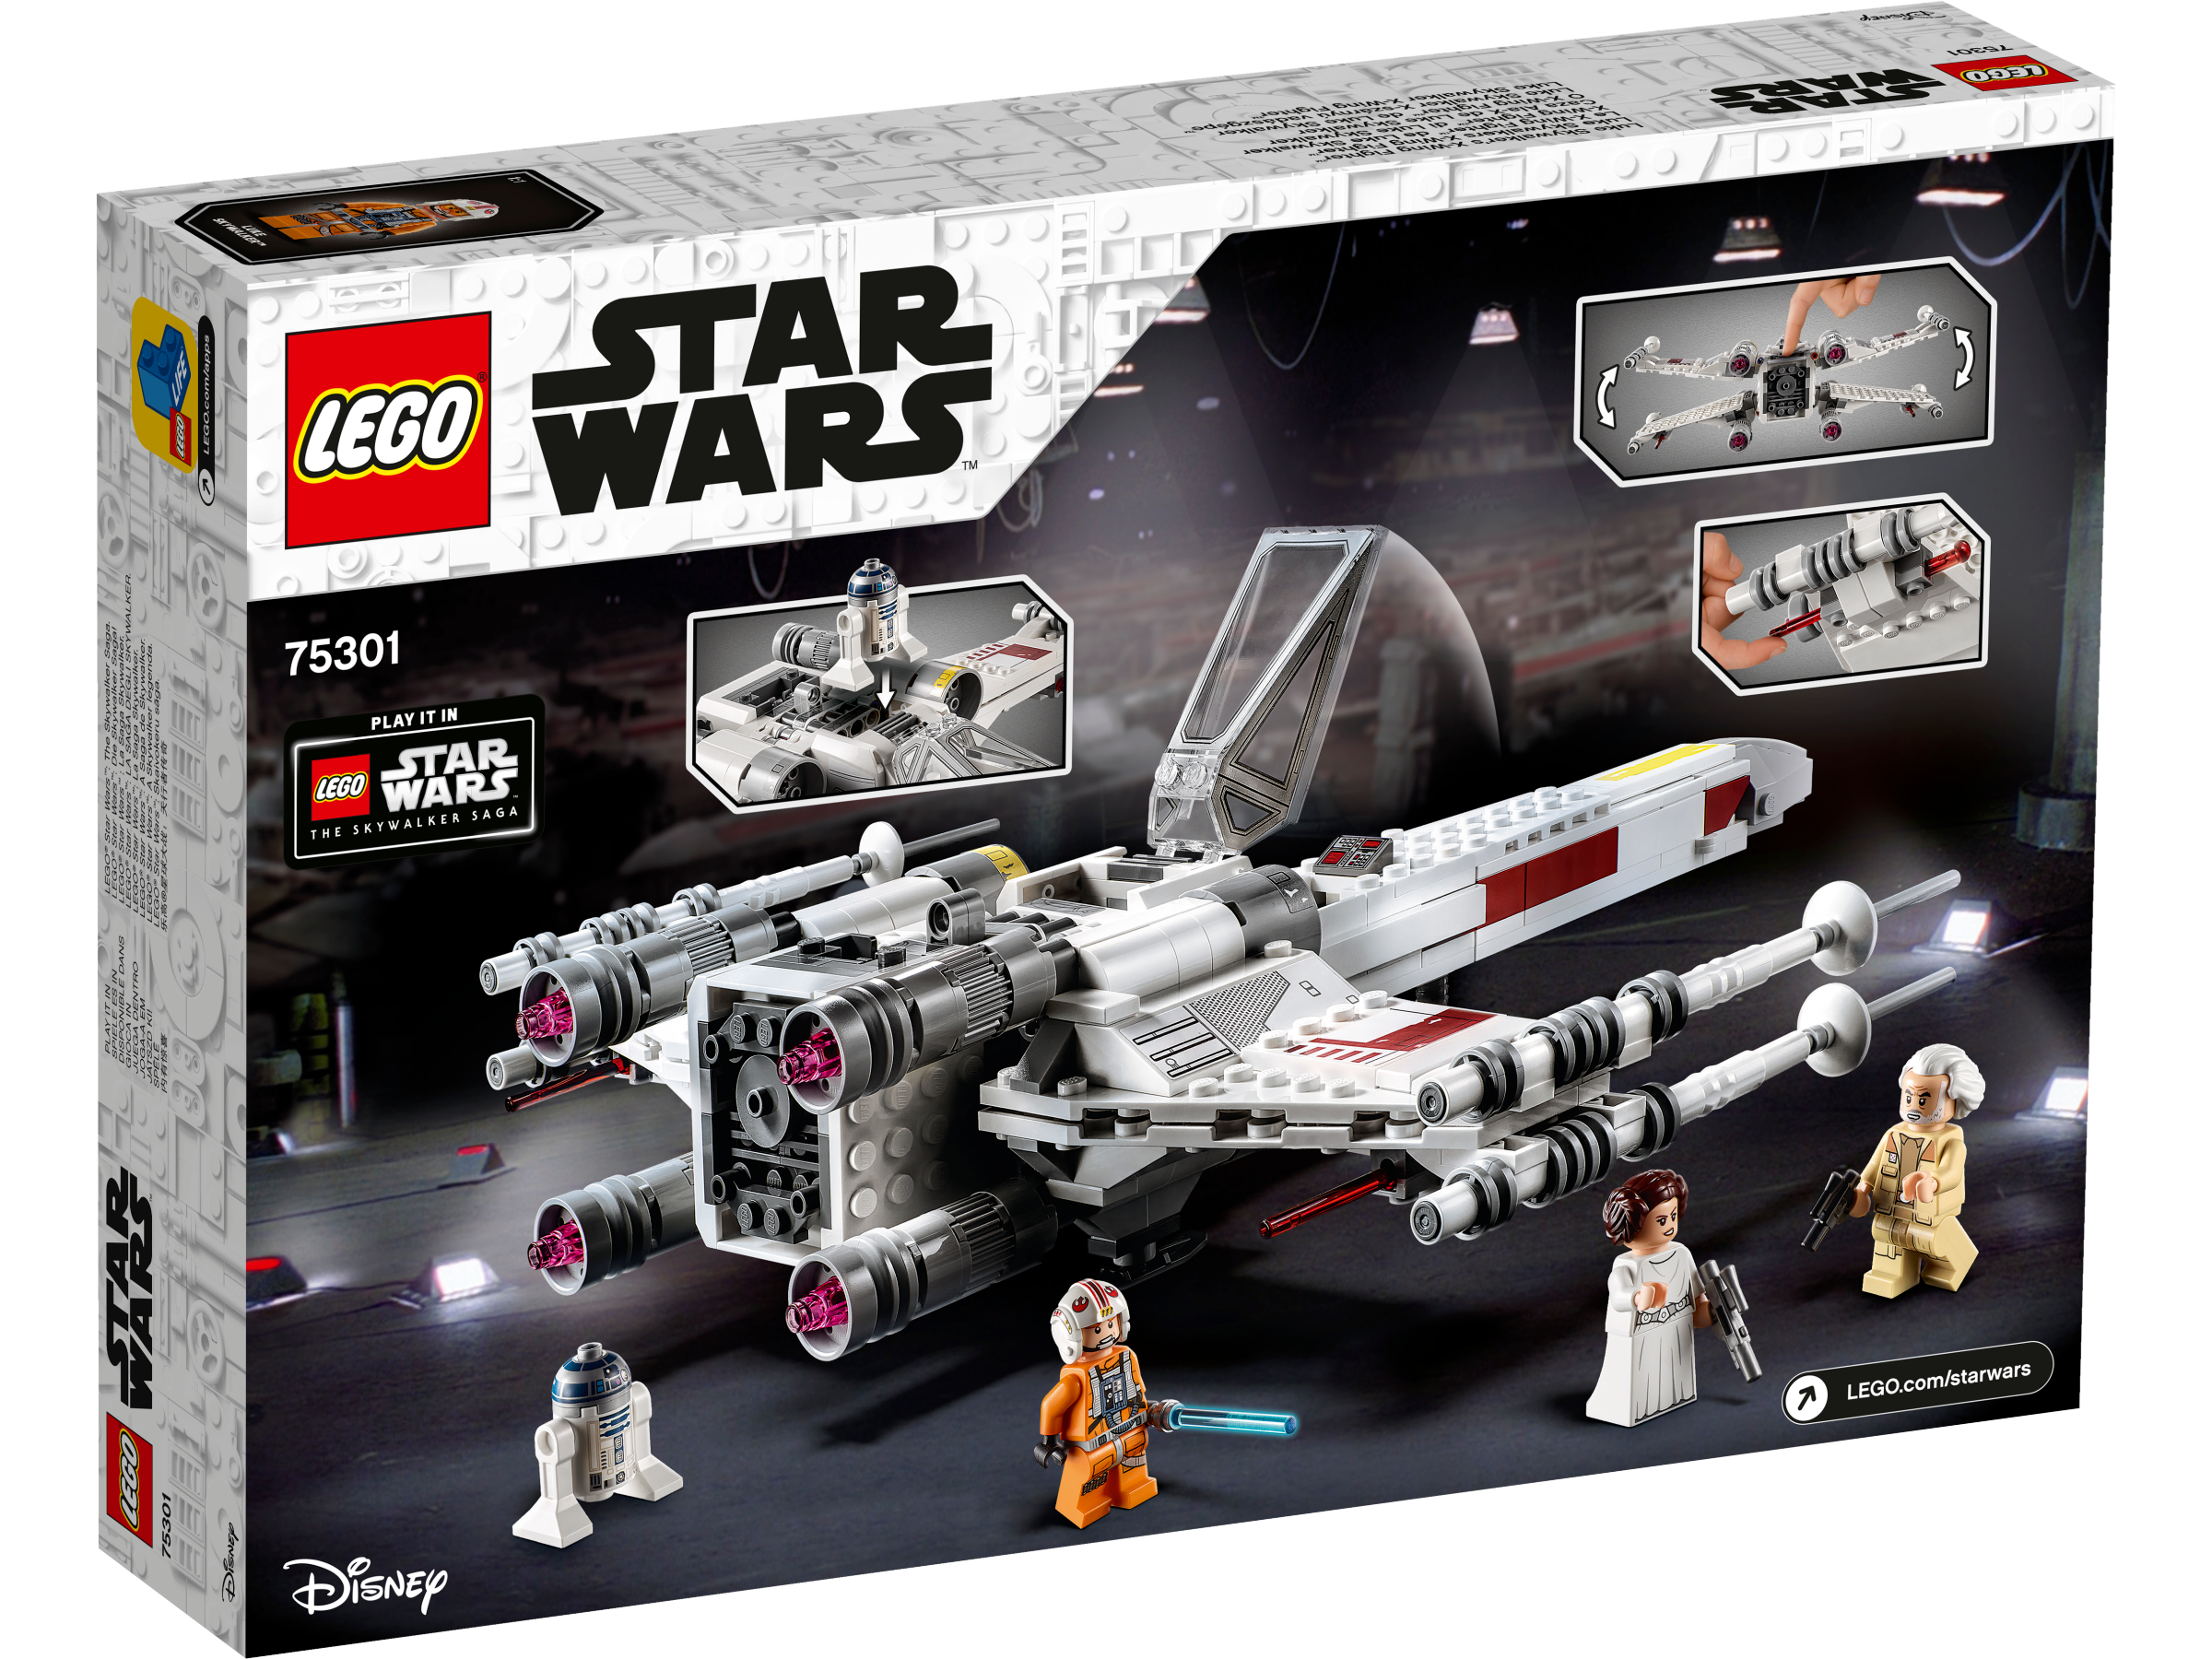 LEGO Star Wars - Luke Skywalkers X-Wing Fighter 9+